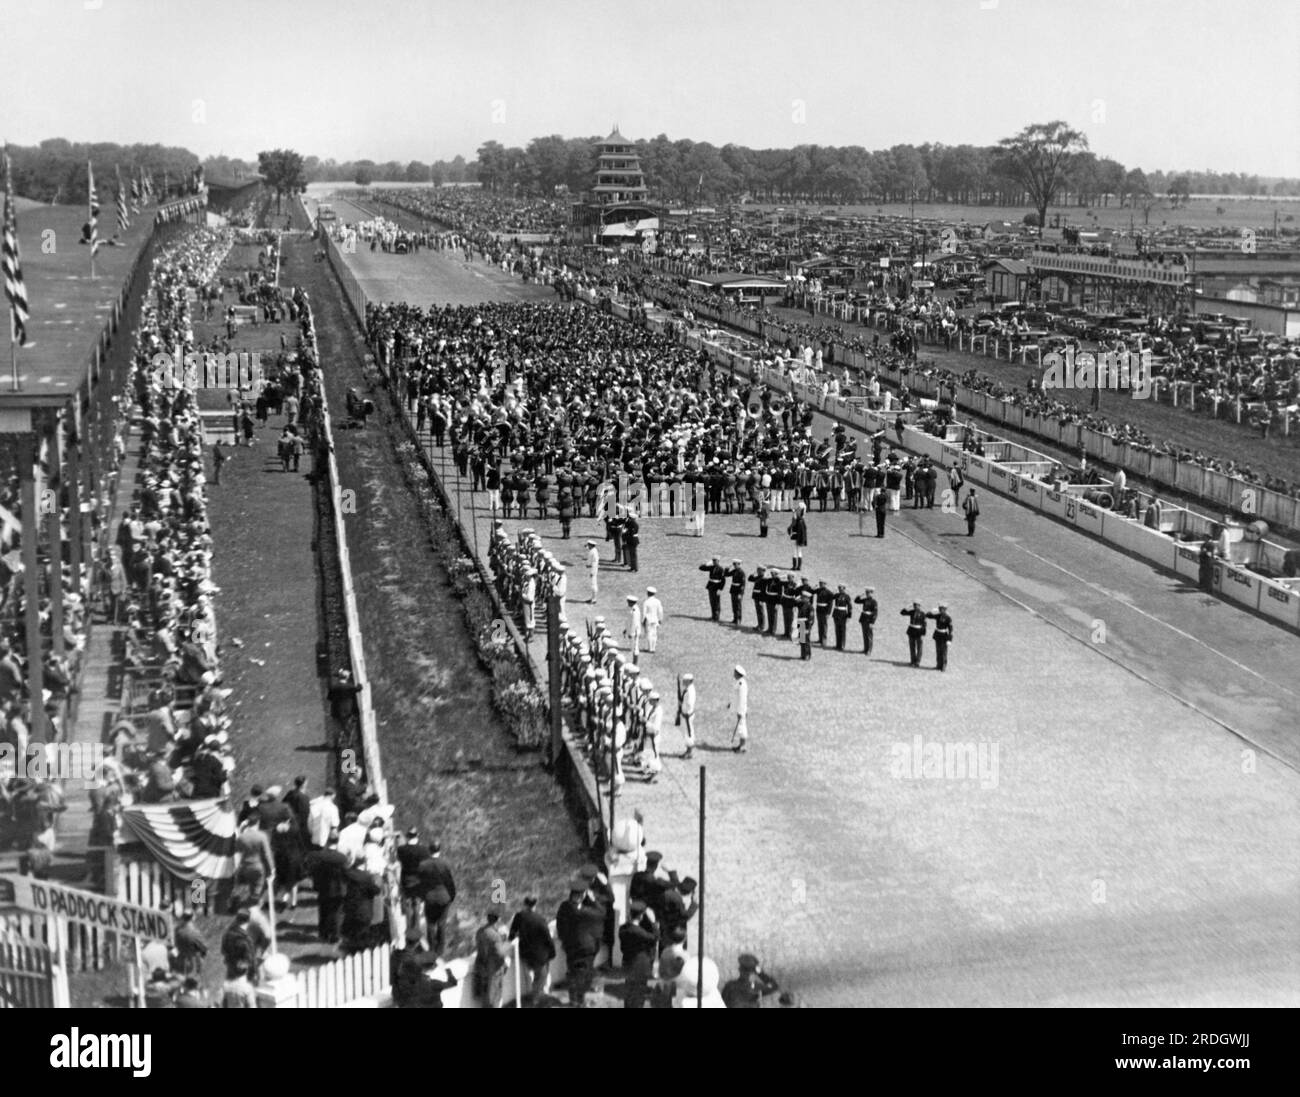 Indianapolis, Indiana : 30 mai 1928 vue de la foule et des cérémonies de la course Indy 500 aujourd'hui, remportée par Louis Meyer au volant d'une Miller Special à 99,4 mph. Banque D'Images